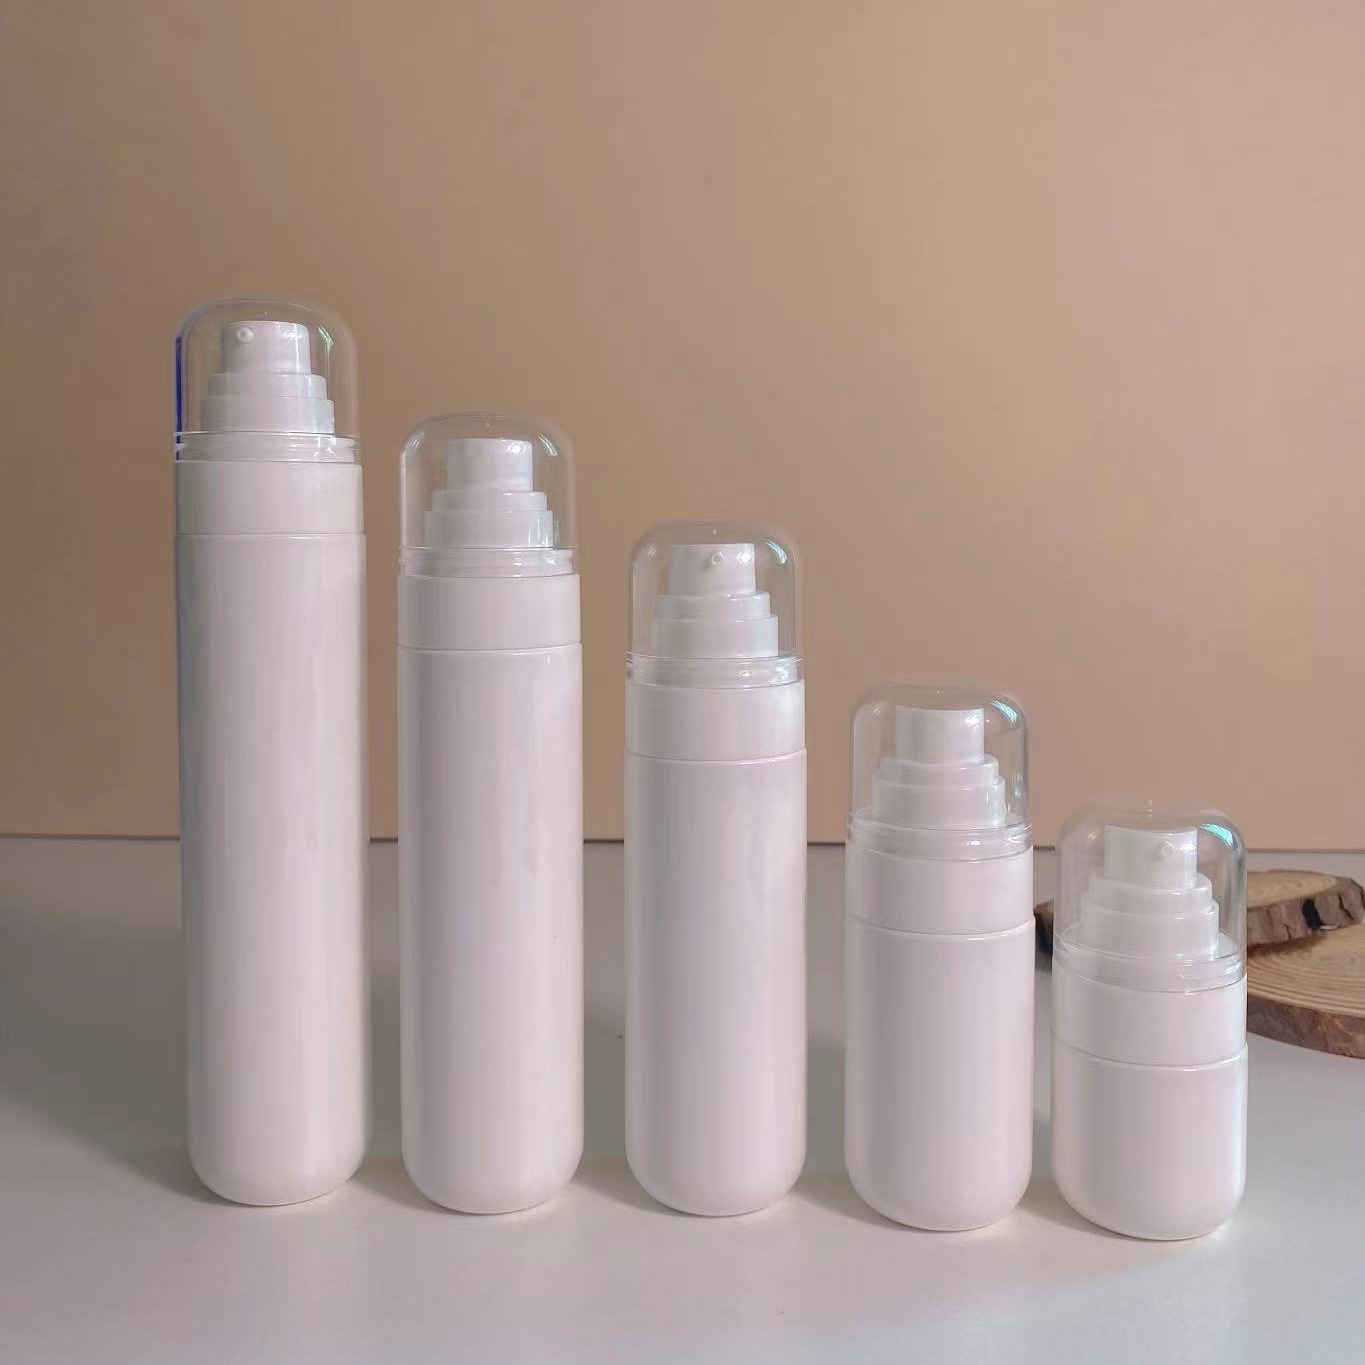 现货白色细雾喷雾瓶乳液瓶100120毫升圆形塑料分装瓶